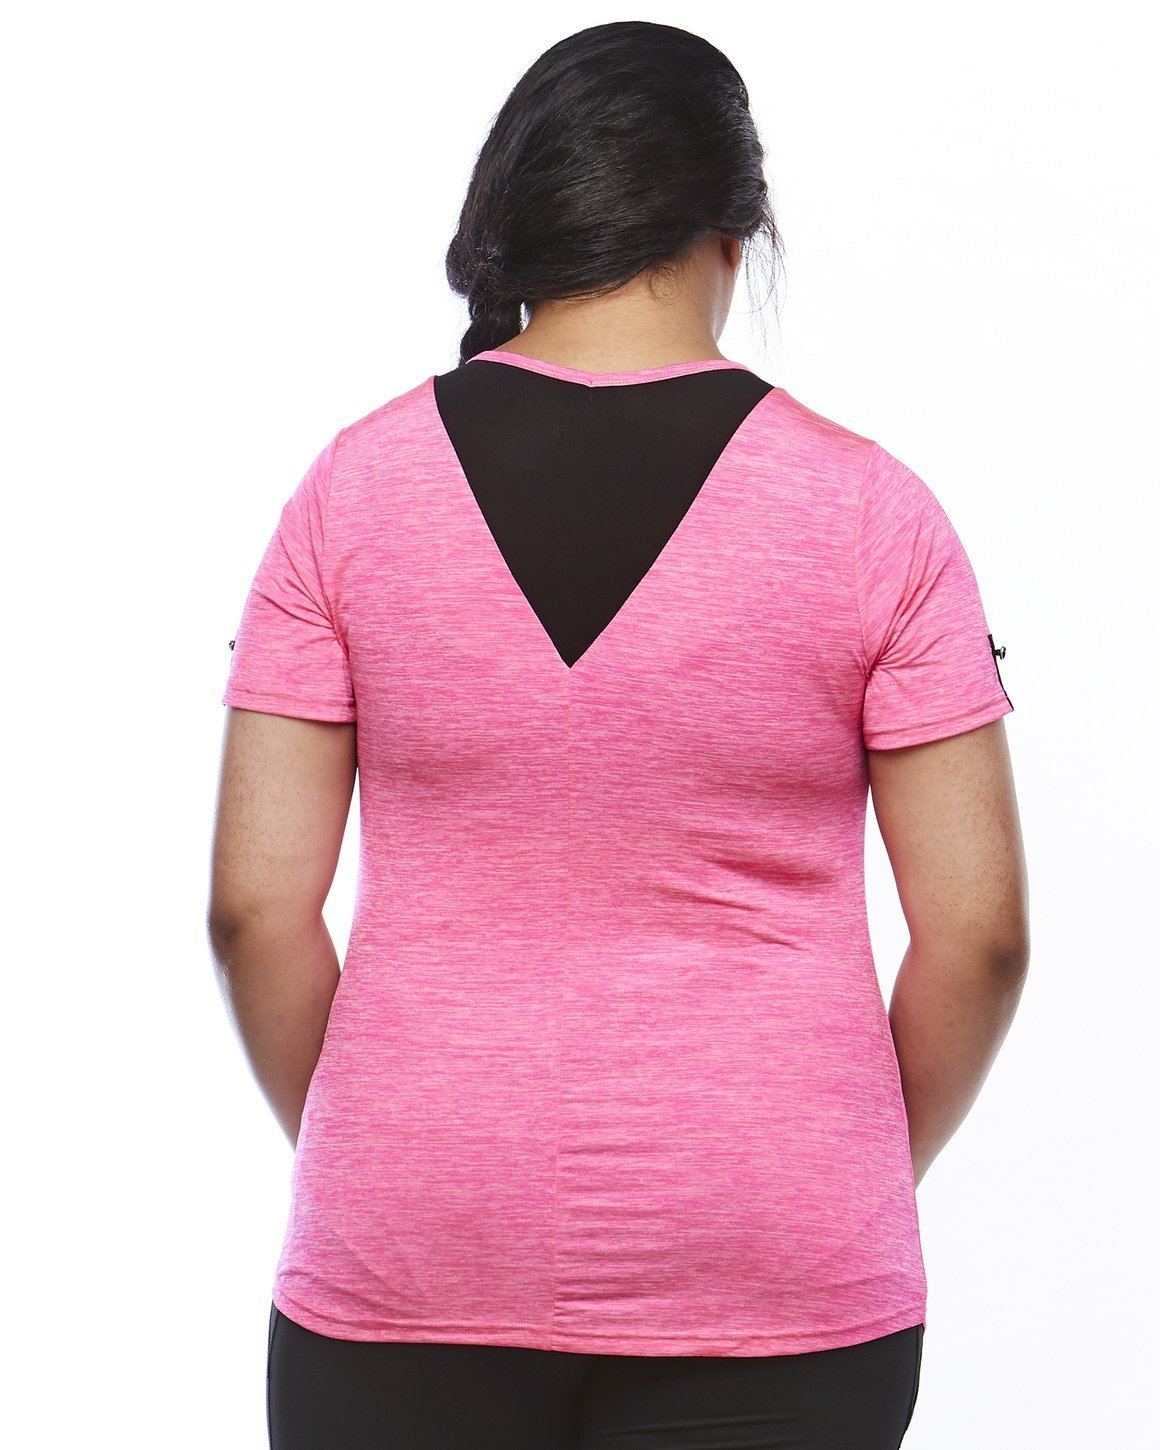 Zest Short Sleeve Shirt - Pink - Be Activewear